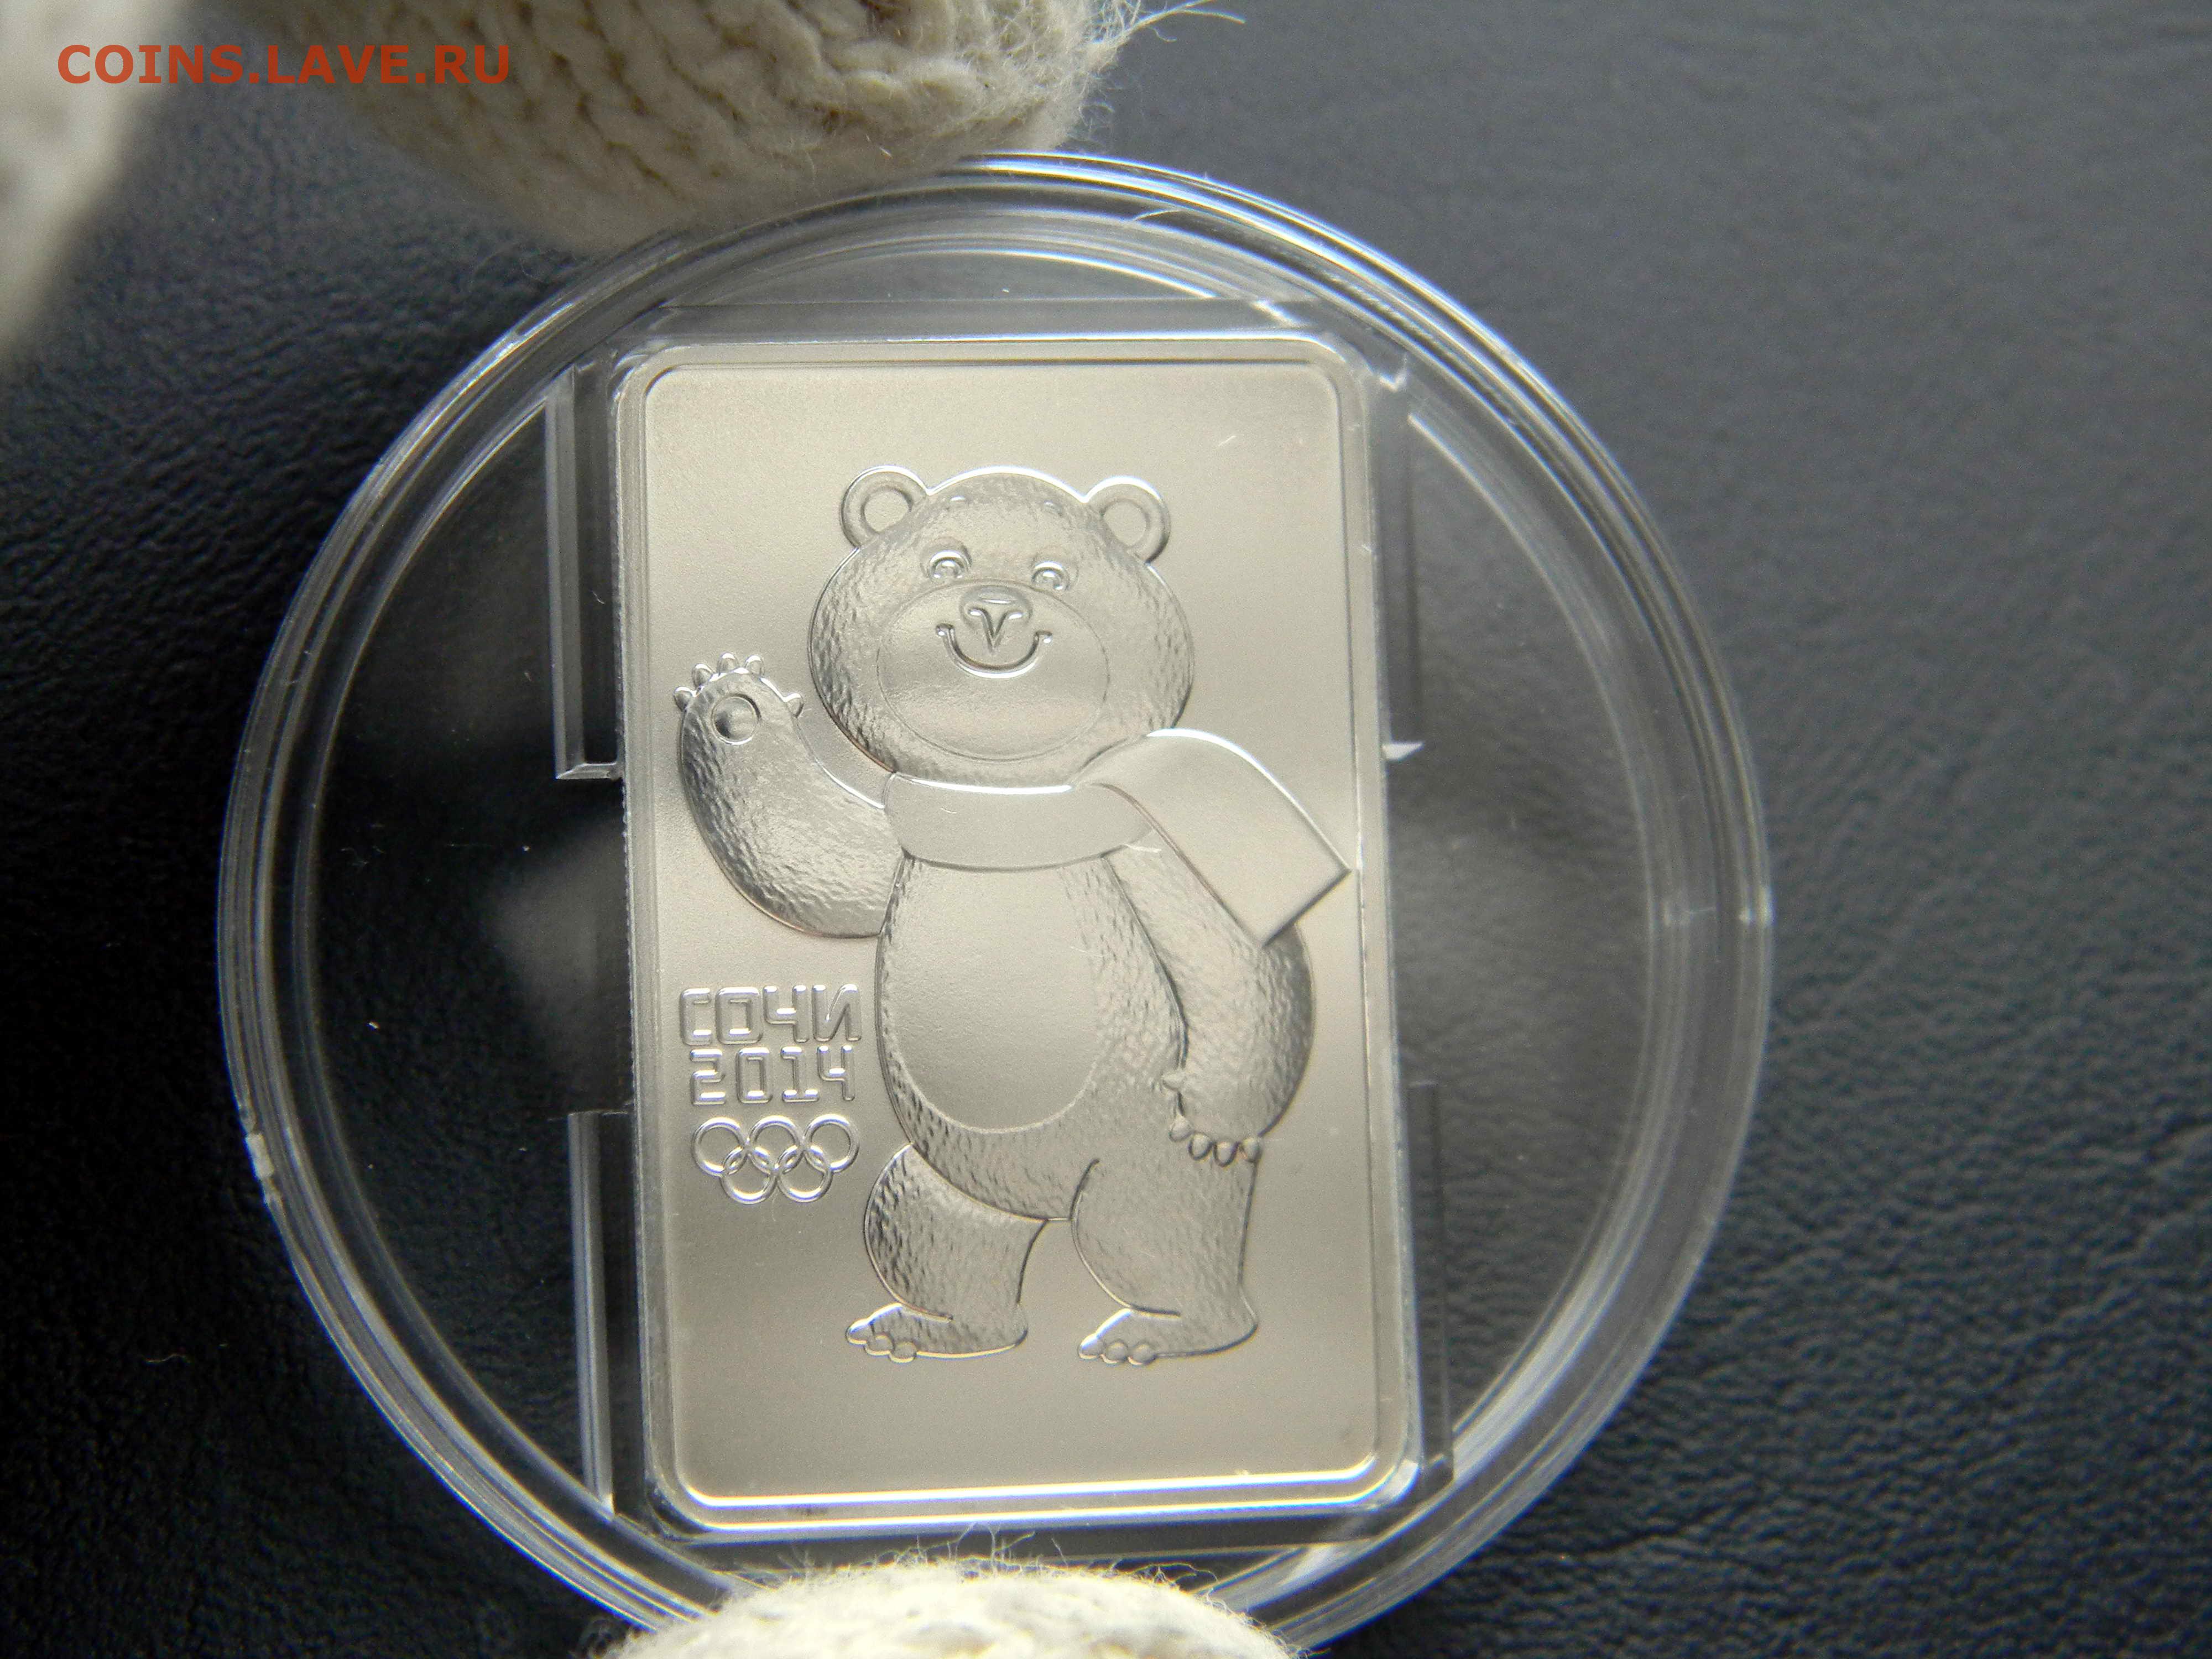 Сочи серебро 3 рубля. 3 Рубля Сочи 2014 серебро мишка. 3 Рубля мишка Сочи. Монета Сочи серебряная круглая медведь. Коробка мишка белая тиснение на крышке.